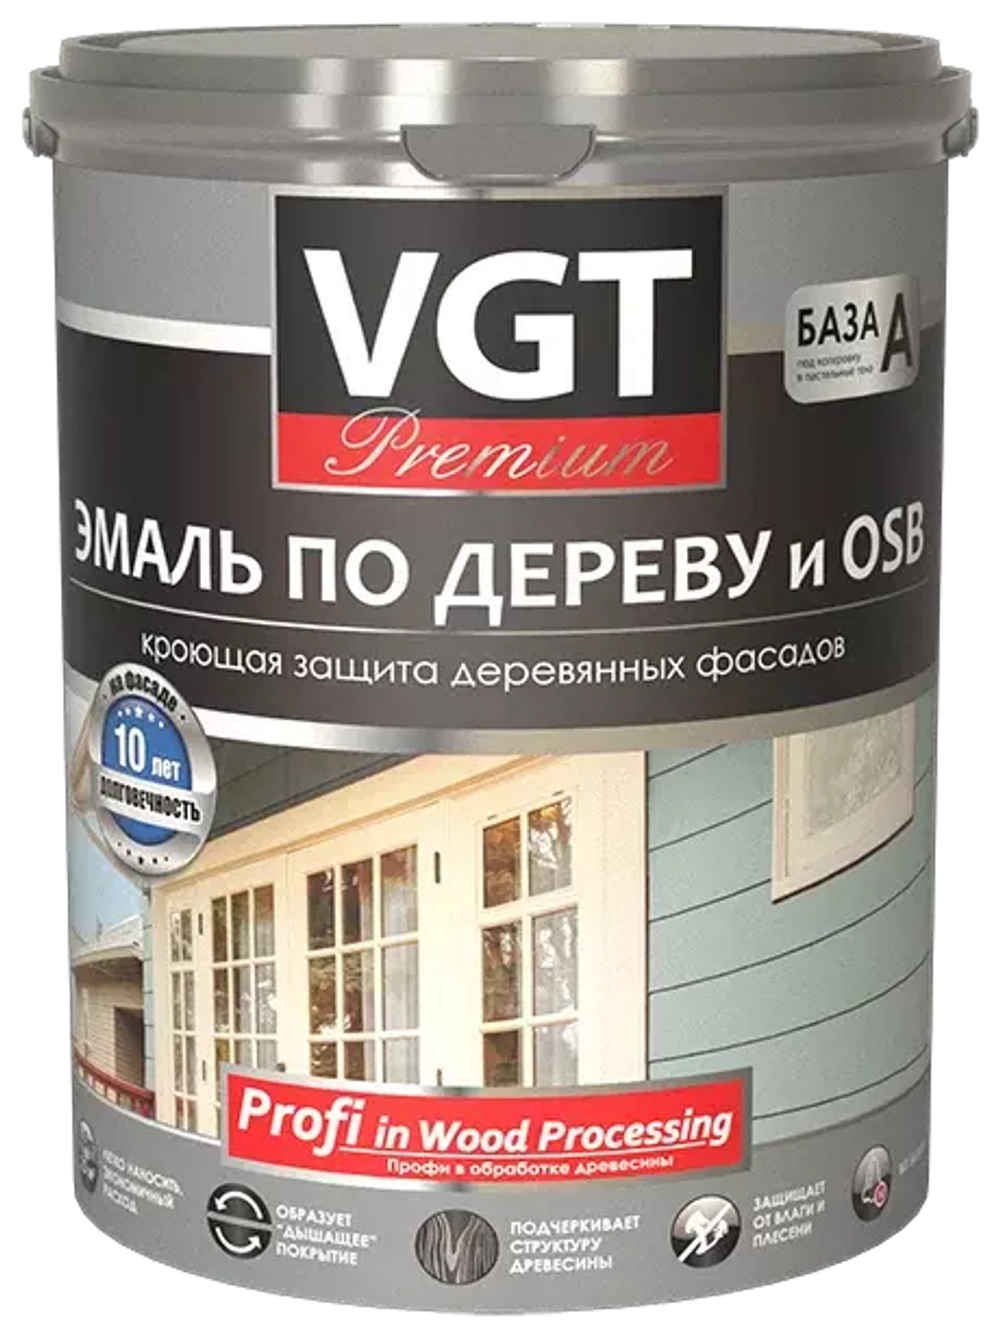 Эмаль акриловая  по дереву и OSB-VGT Premium